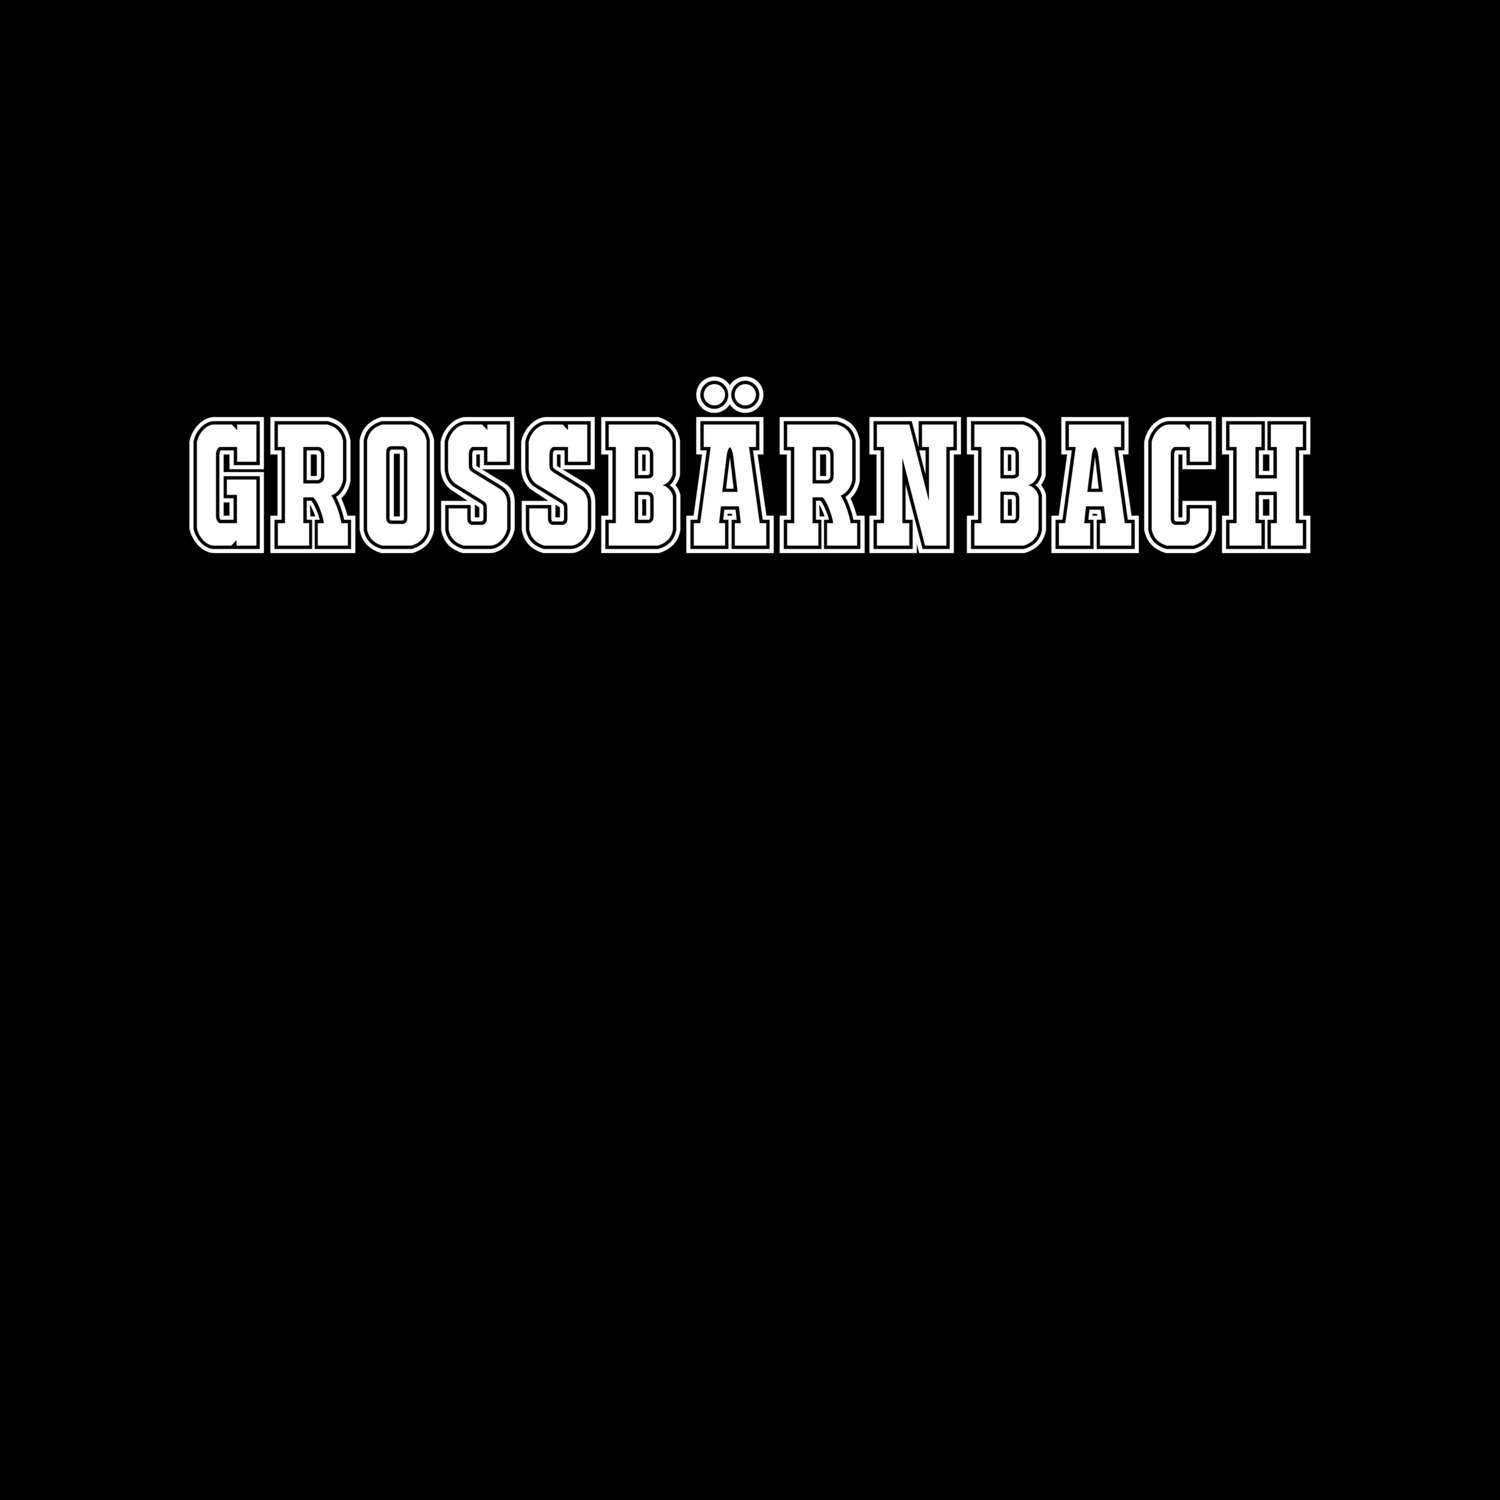 Großbärnbach T-Shirt »Classic«